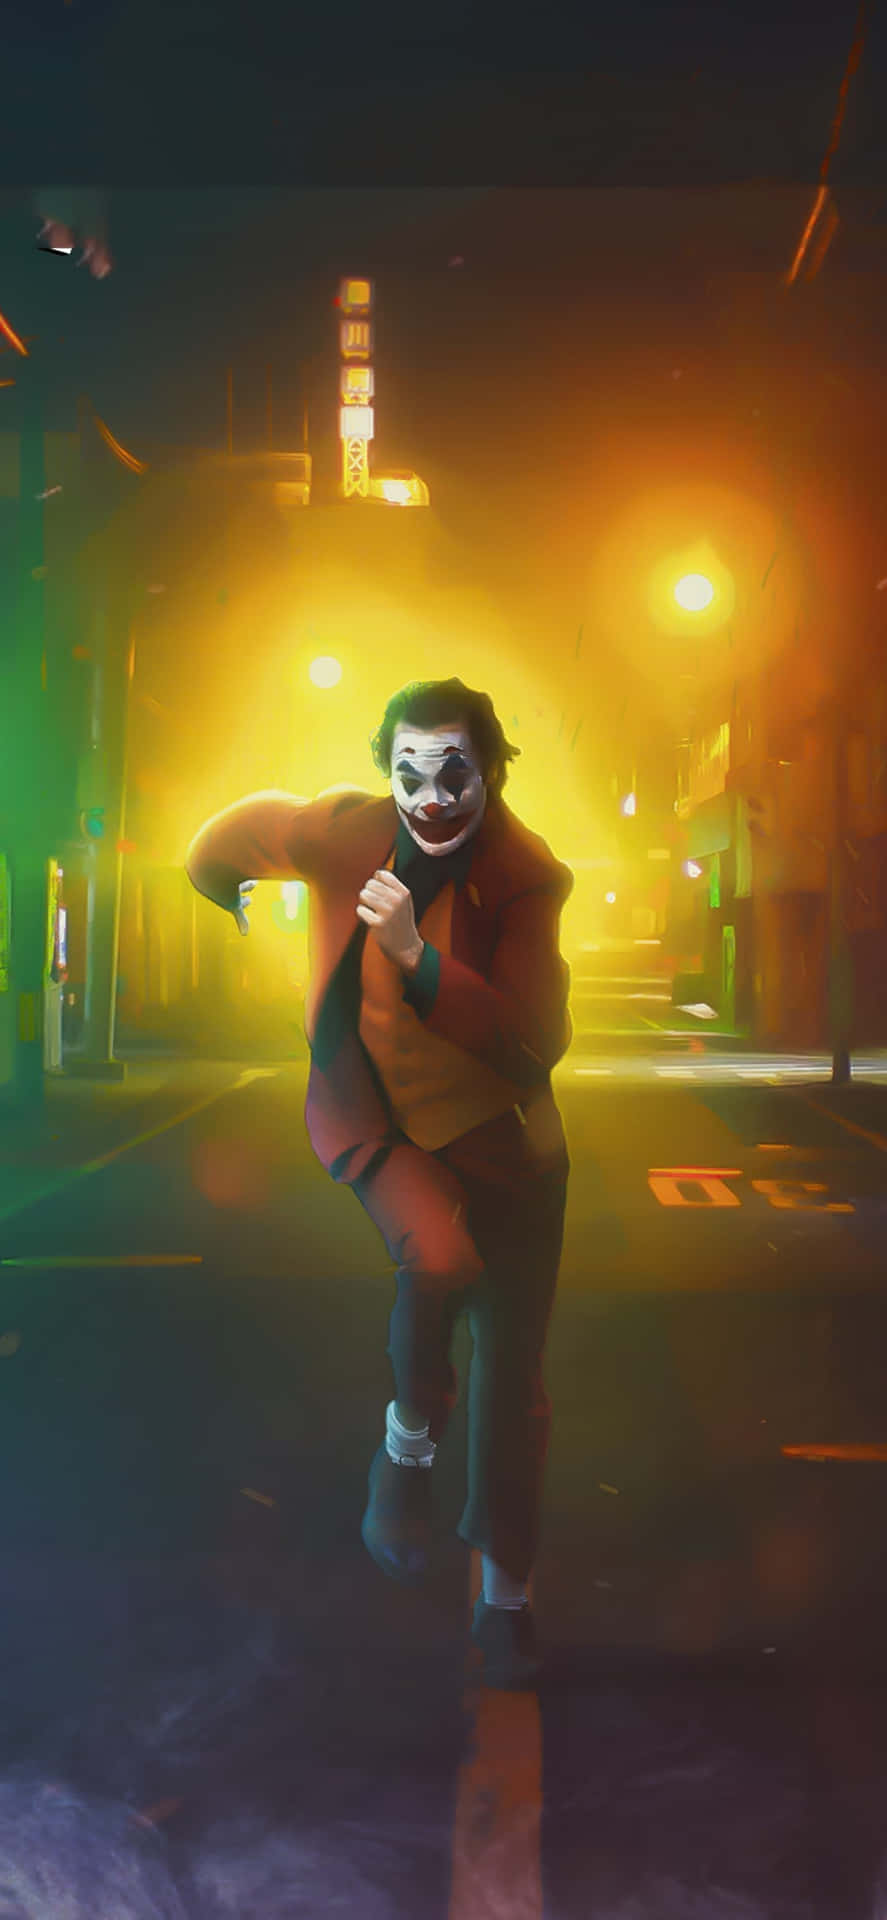 Cool Joker Running Down Street